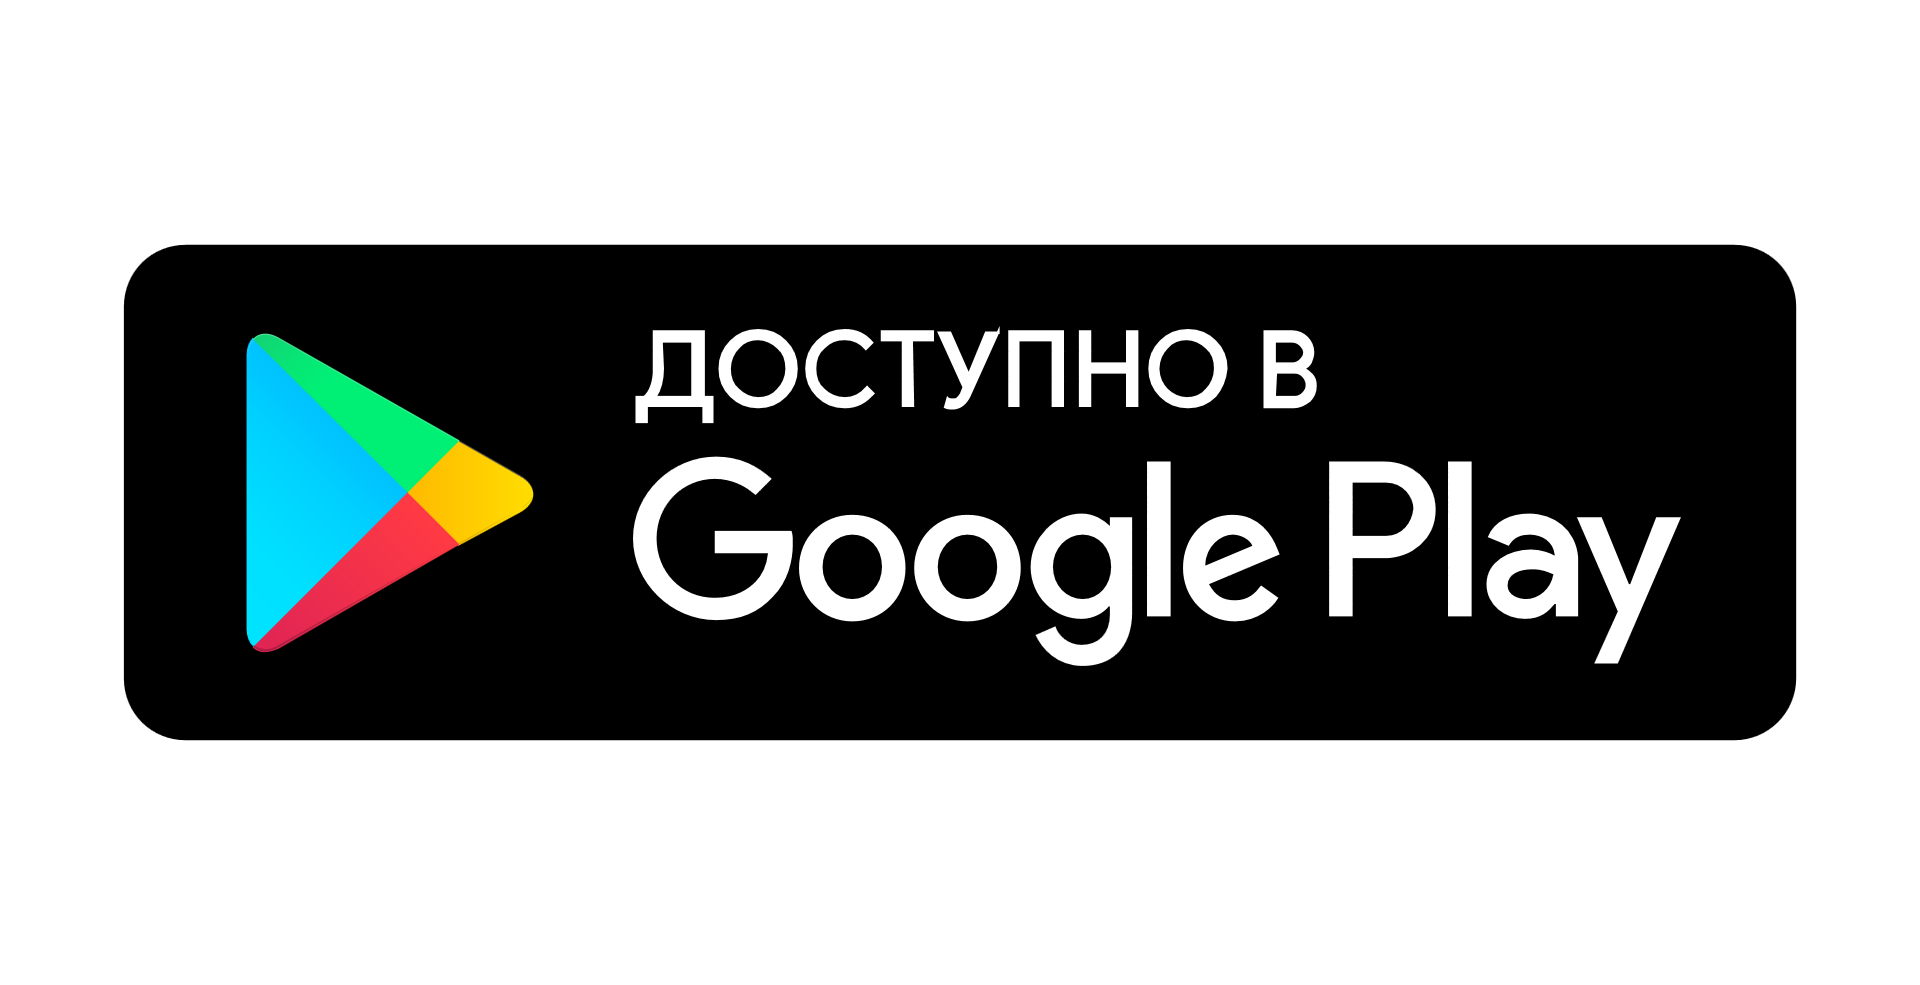 Гугл плей. Логотип Google Play. Доступно в гугл плей. Доступно в гугл плей иконка. Google play турция